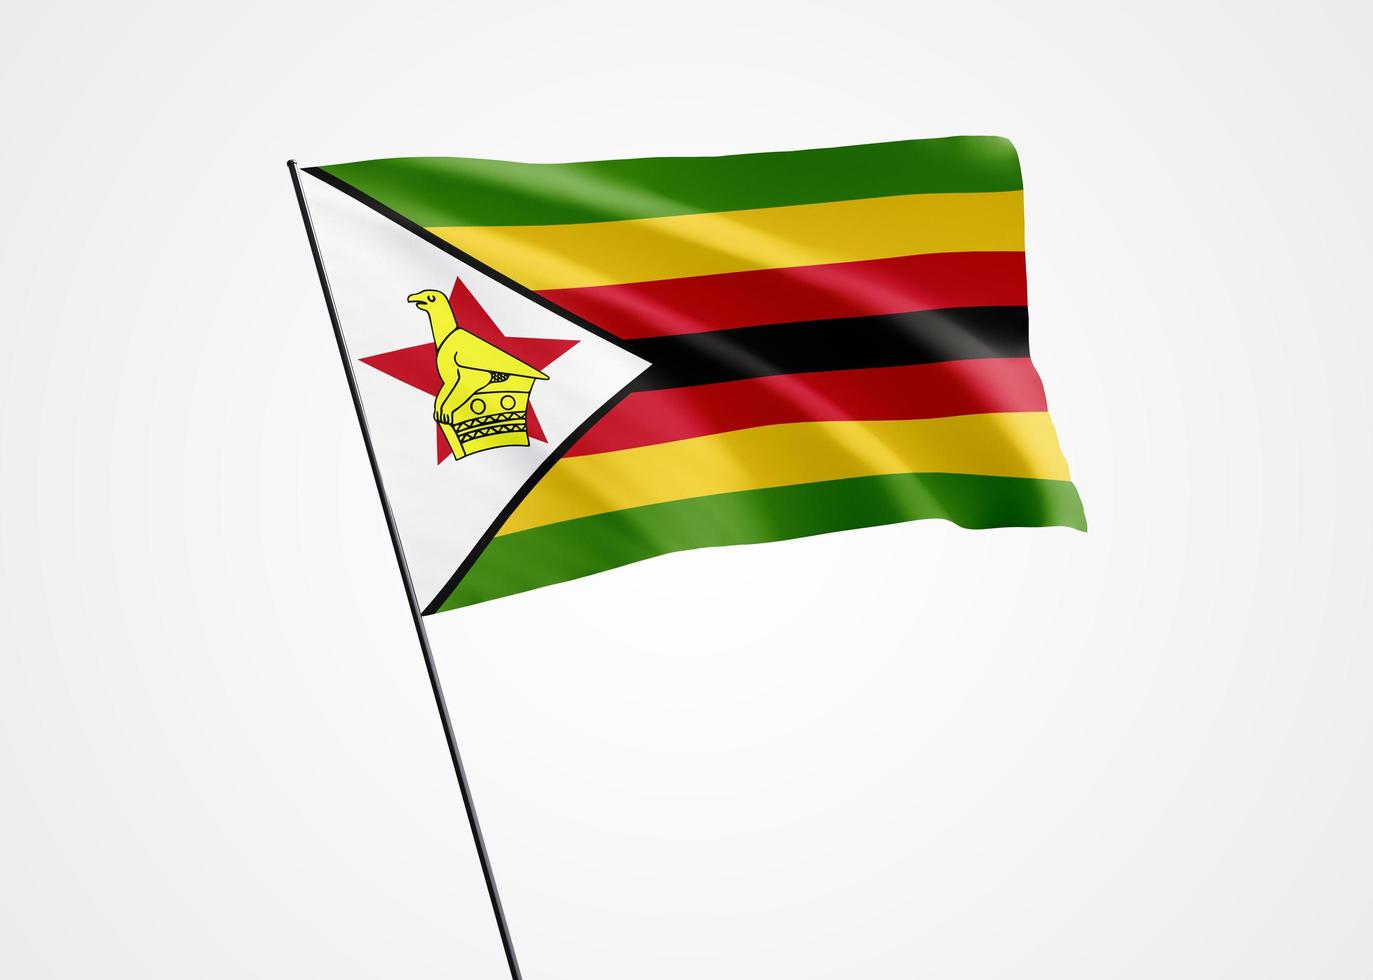 Zimbabwe flag flying high in the white isolated background. April 18 Zimbabwe independence day. World national flag collection world national flag collection photo